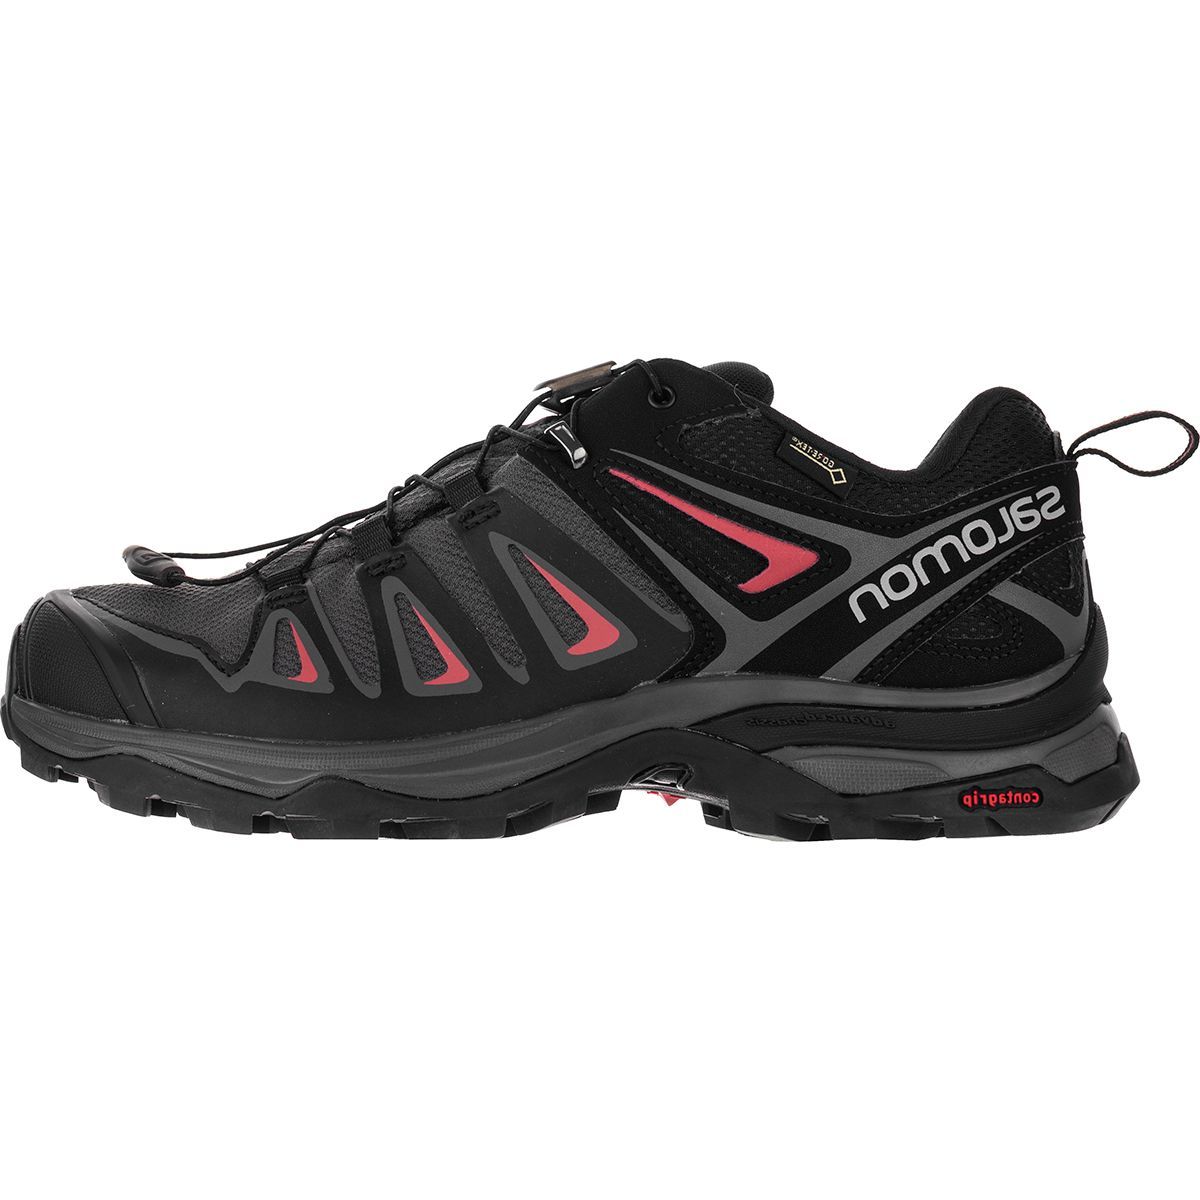 Salomon X Ultra 3 GTX Hiking Shoe - Women's